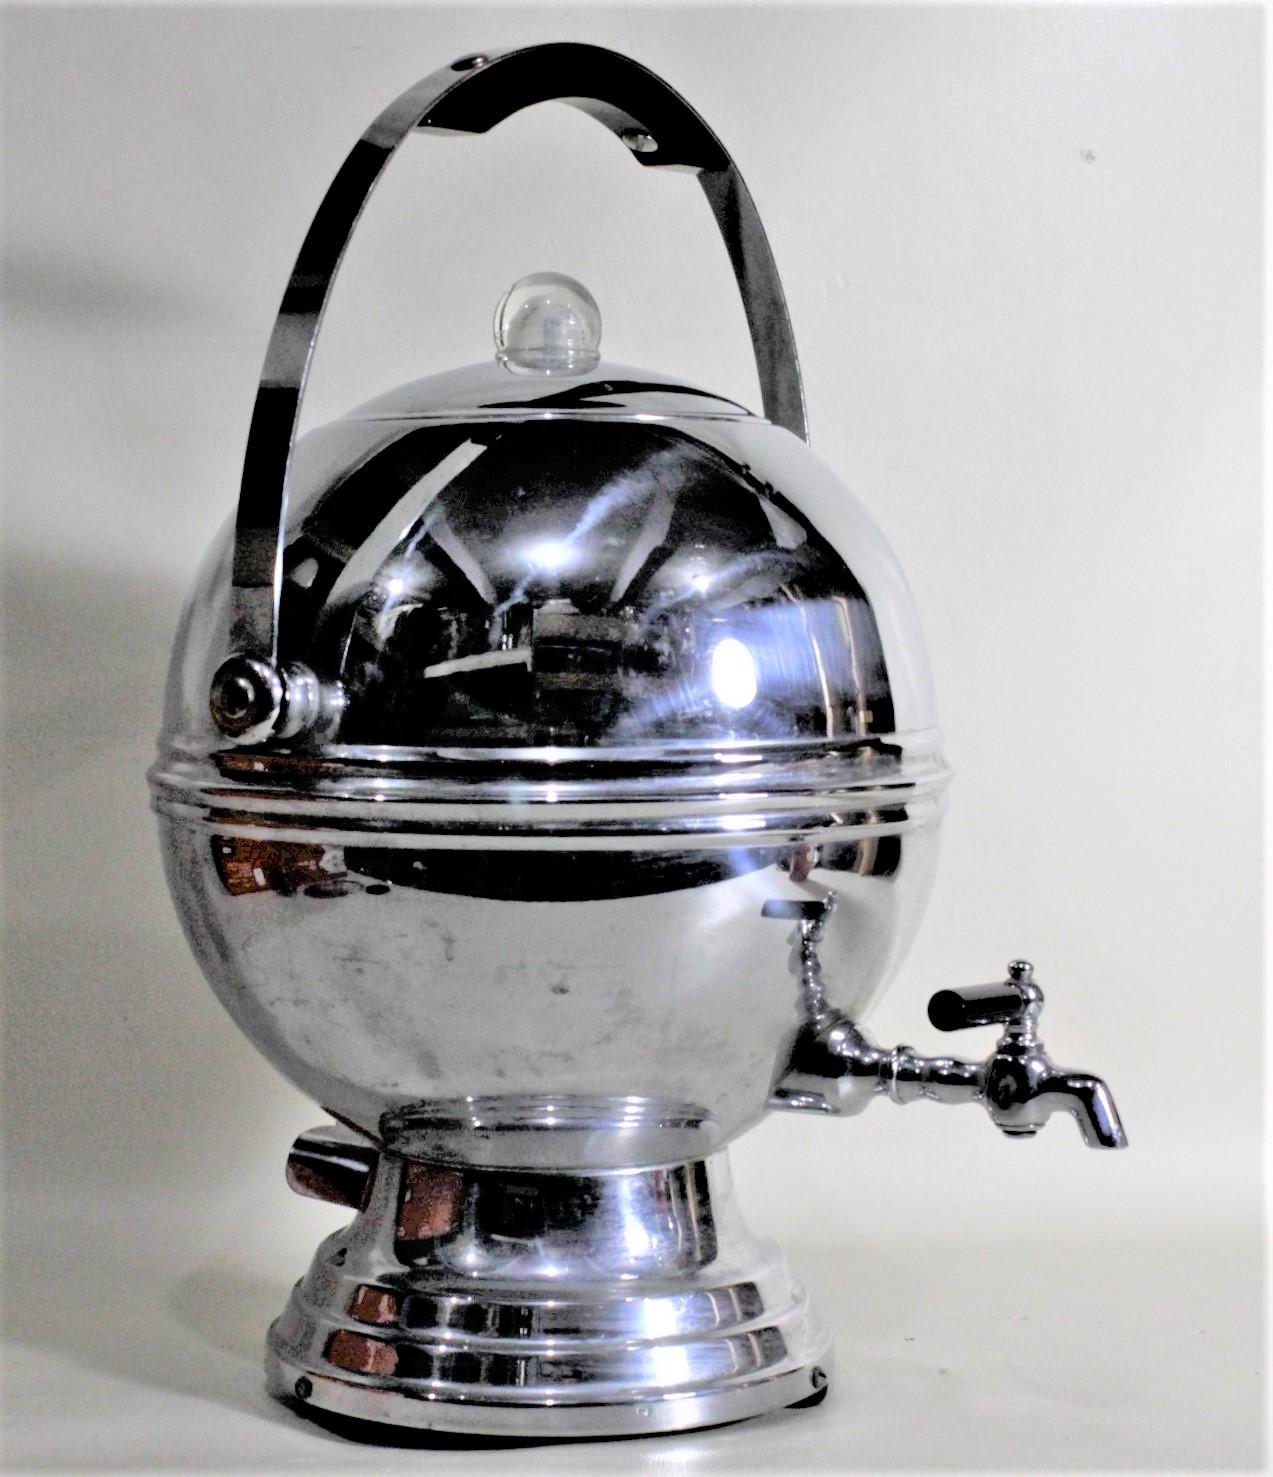 Diese elektrische Kaffeemaschine aus der Mitte des Jahrhunderts wurde von der Labelle's Silver Company in den Vereinigten Staaten um 1960 im Stil des Maschinenzeitalters hergestellt. Dieser kugelförmige Perkolator ist in Chrom mit schwarzen Akzenten